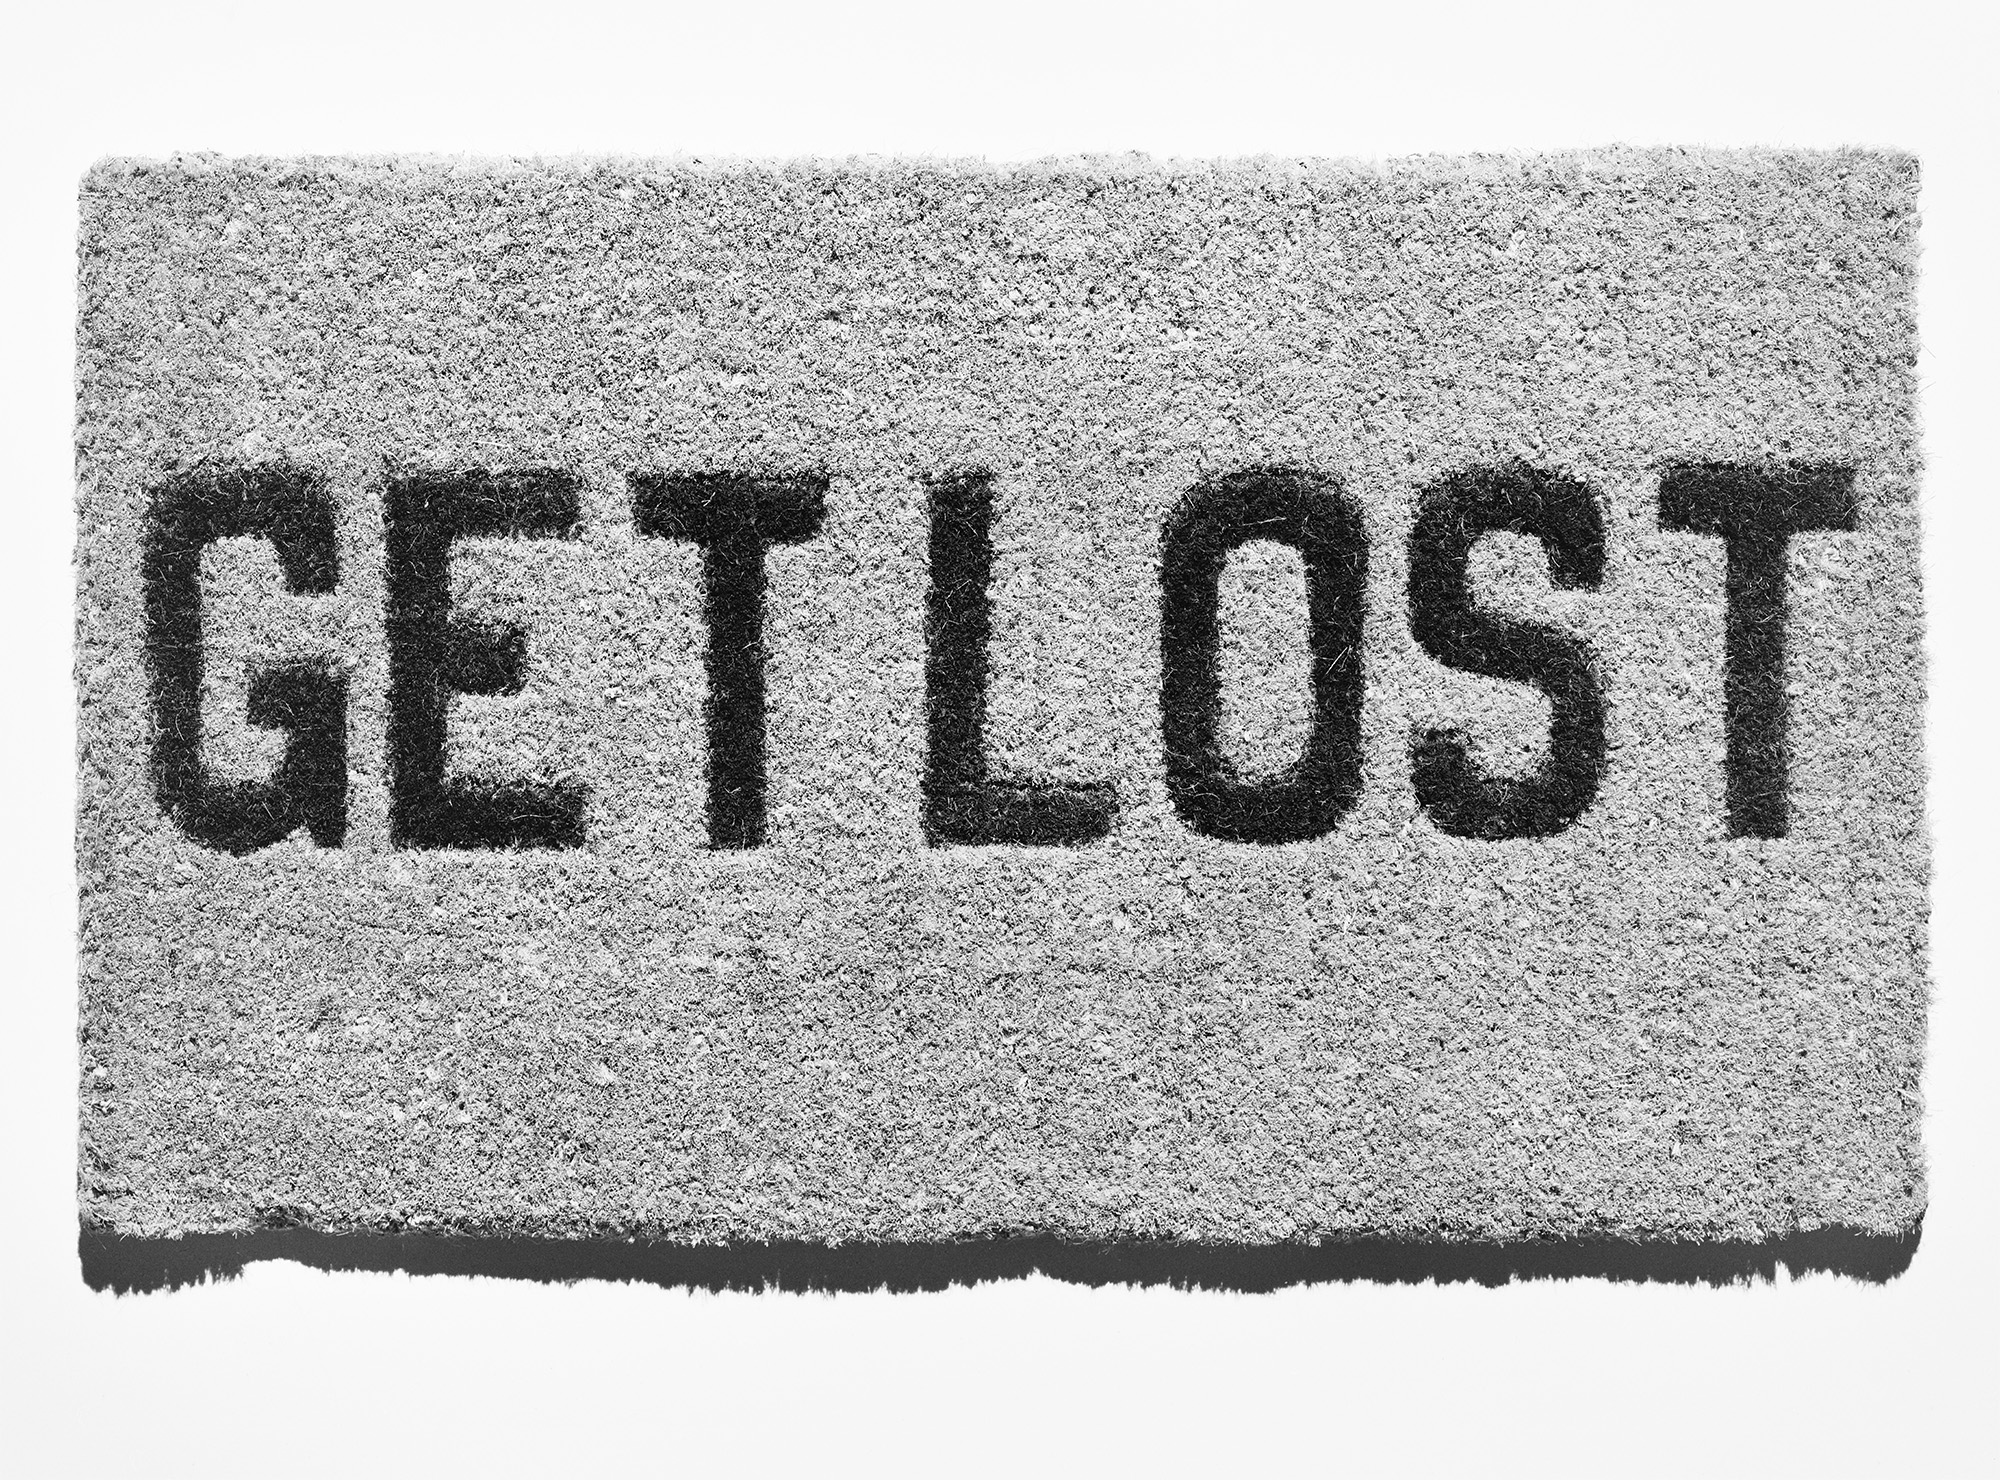 Get Lost, 1987